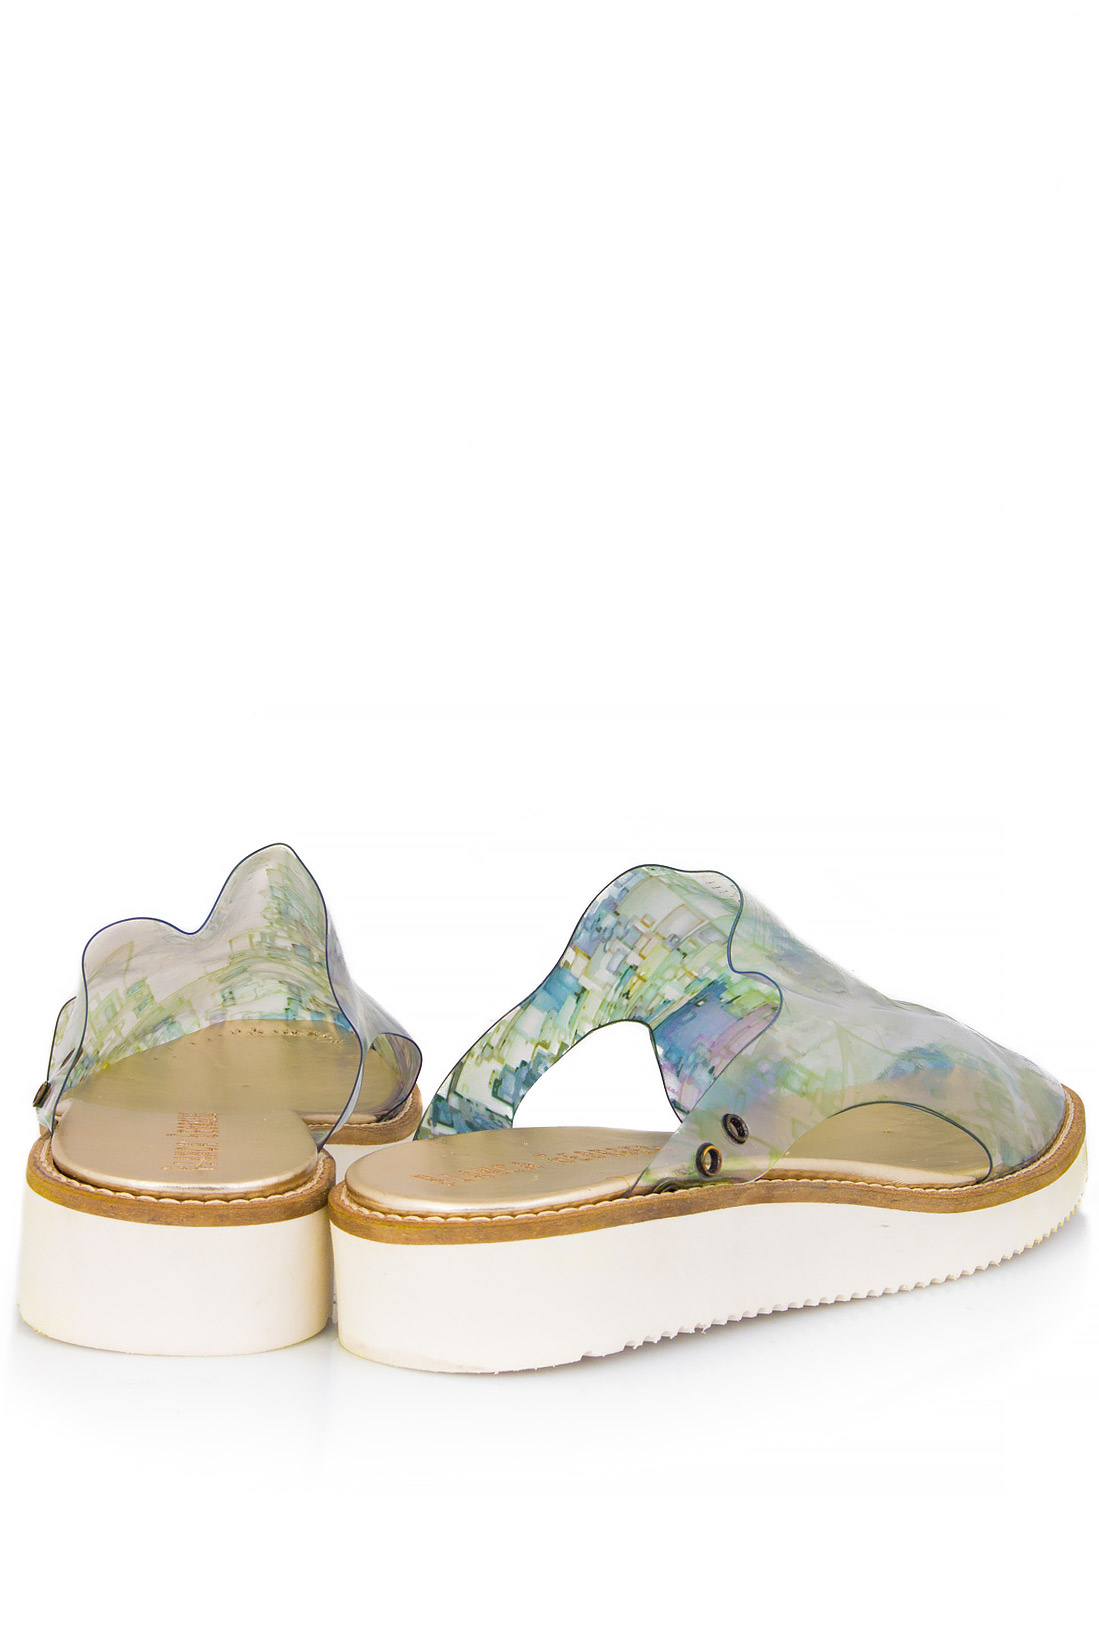 Pantofi din PVC ''Nurdle'' Bianca Georgescu imagine 2